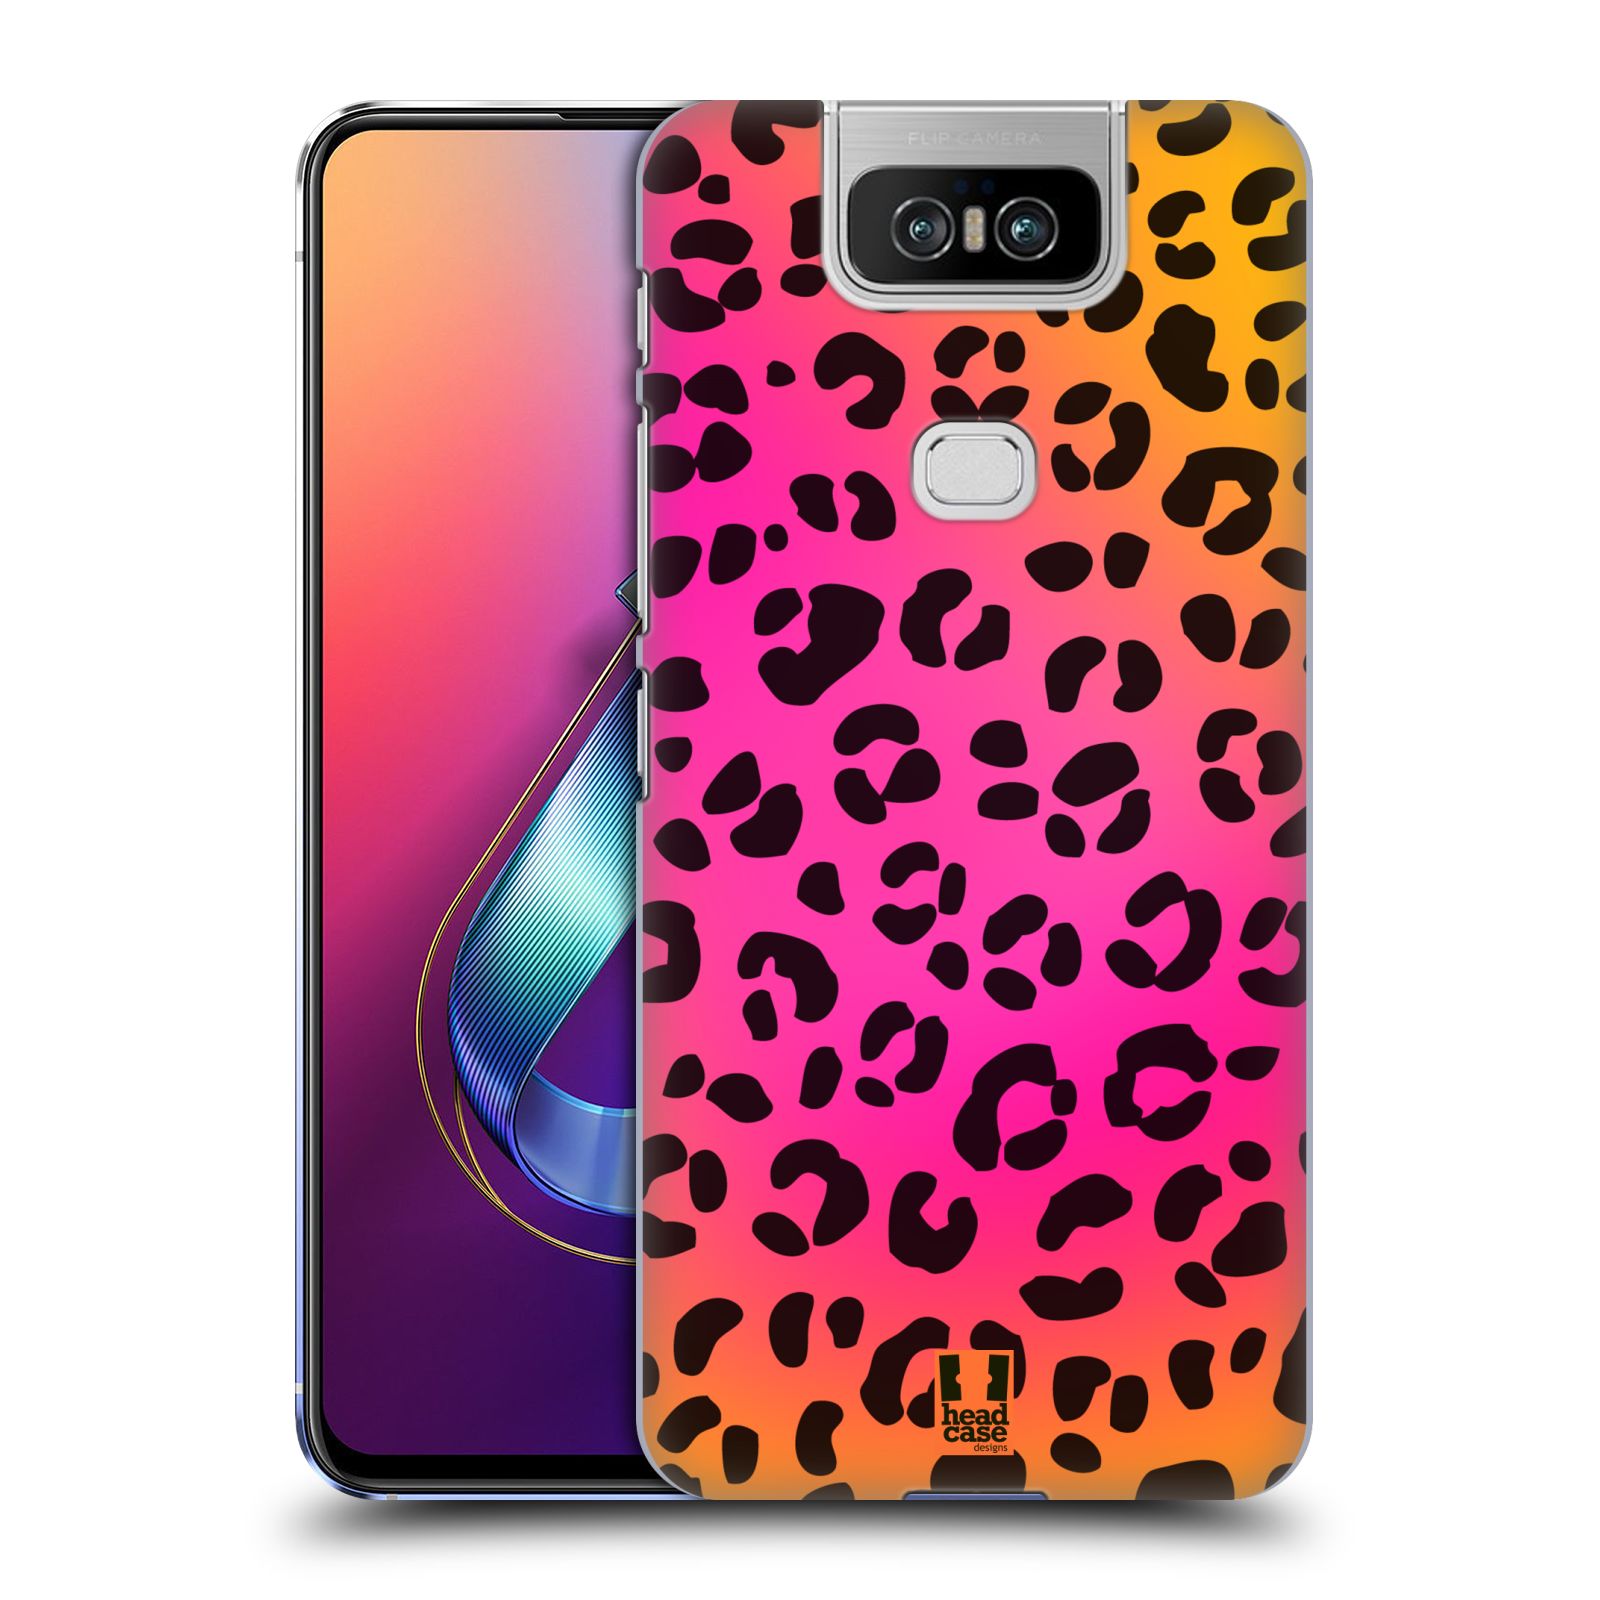 Pouzdro na mobil Asus Zenfone 6 ZS630KL - HEAD CASE - vzor Divočina zvíře růžový leopard